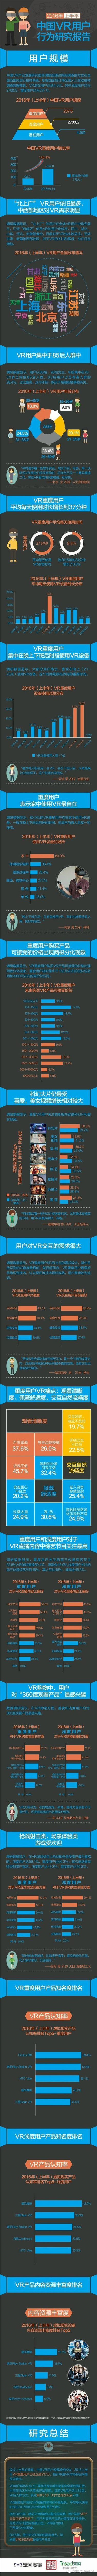 2016 上半年 VR 报告：潜在用户4.5亿